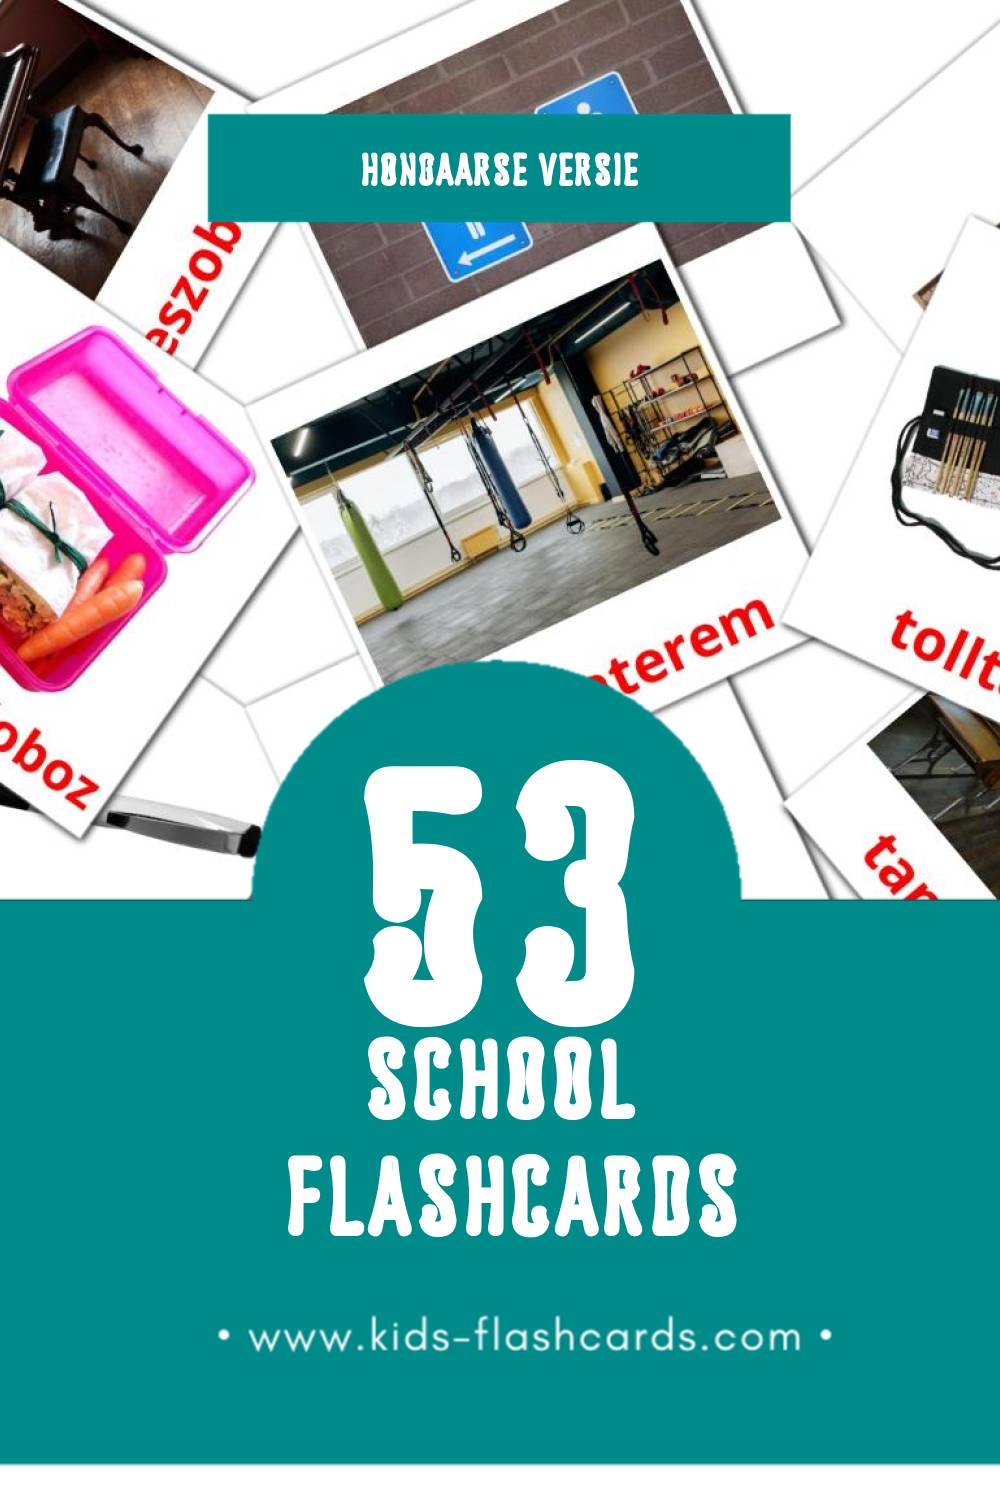 Visuele iskola Flashcards voor Kleuters (53 kaarten in het Hongaars)